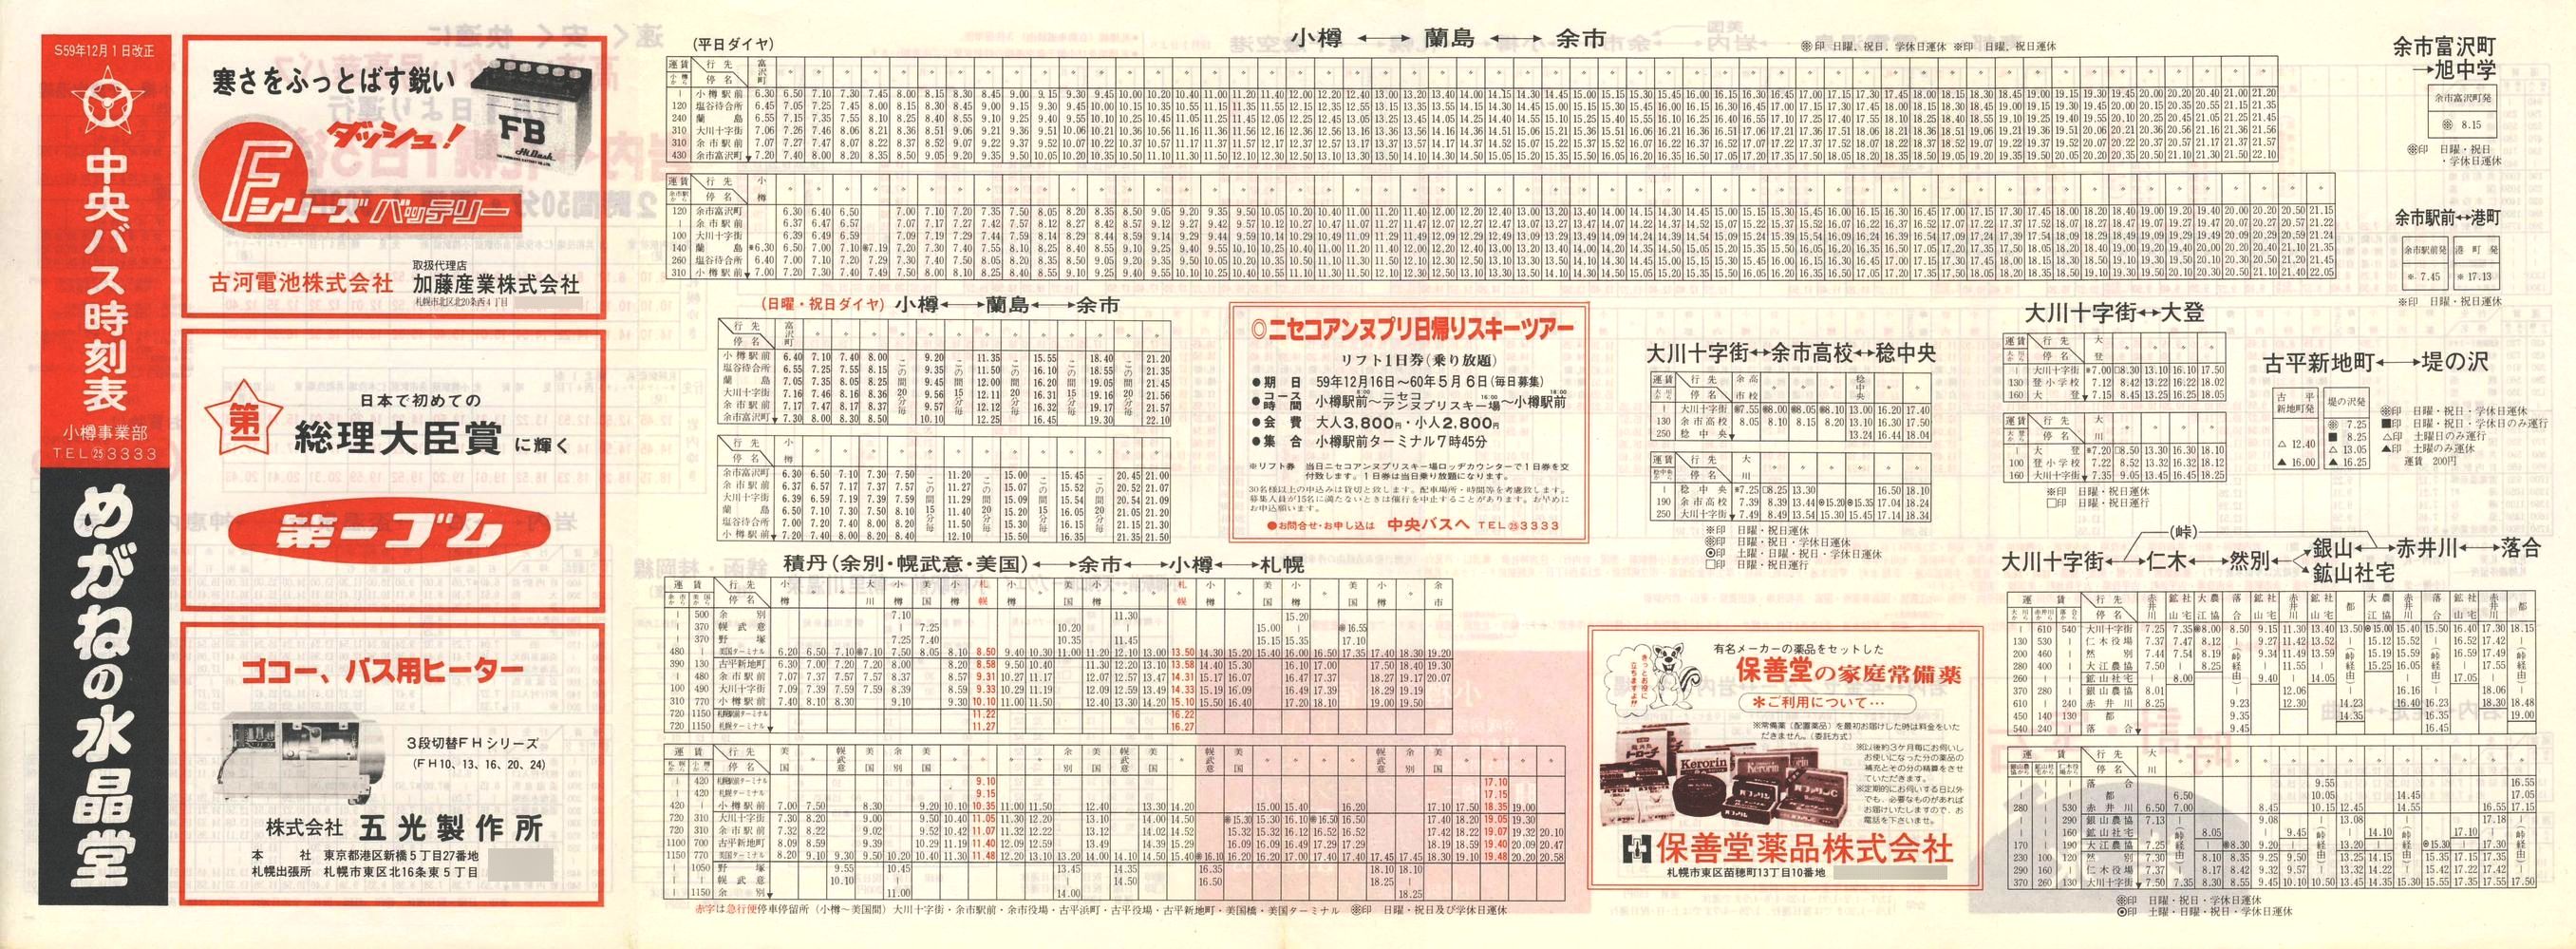 1984-12-01改正_北海道中央バス(小樽)_小樽事業部管内郊外線時刻表表面